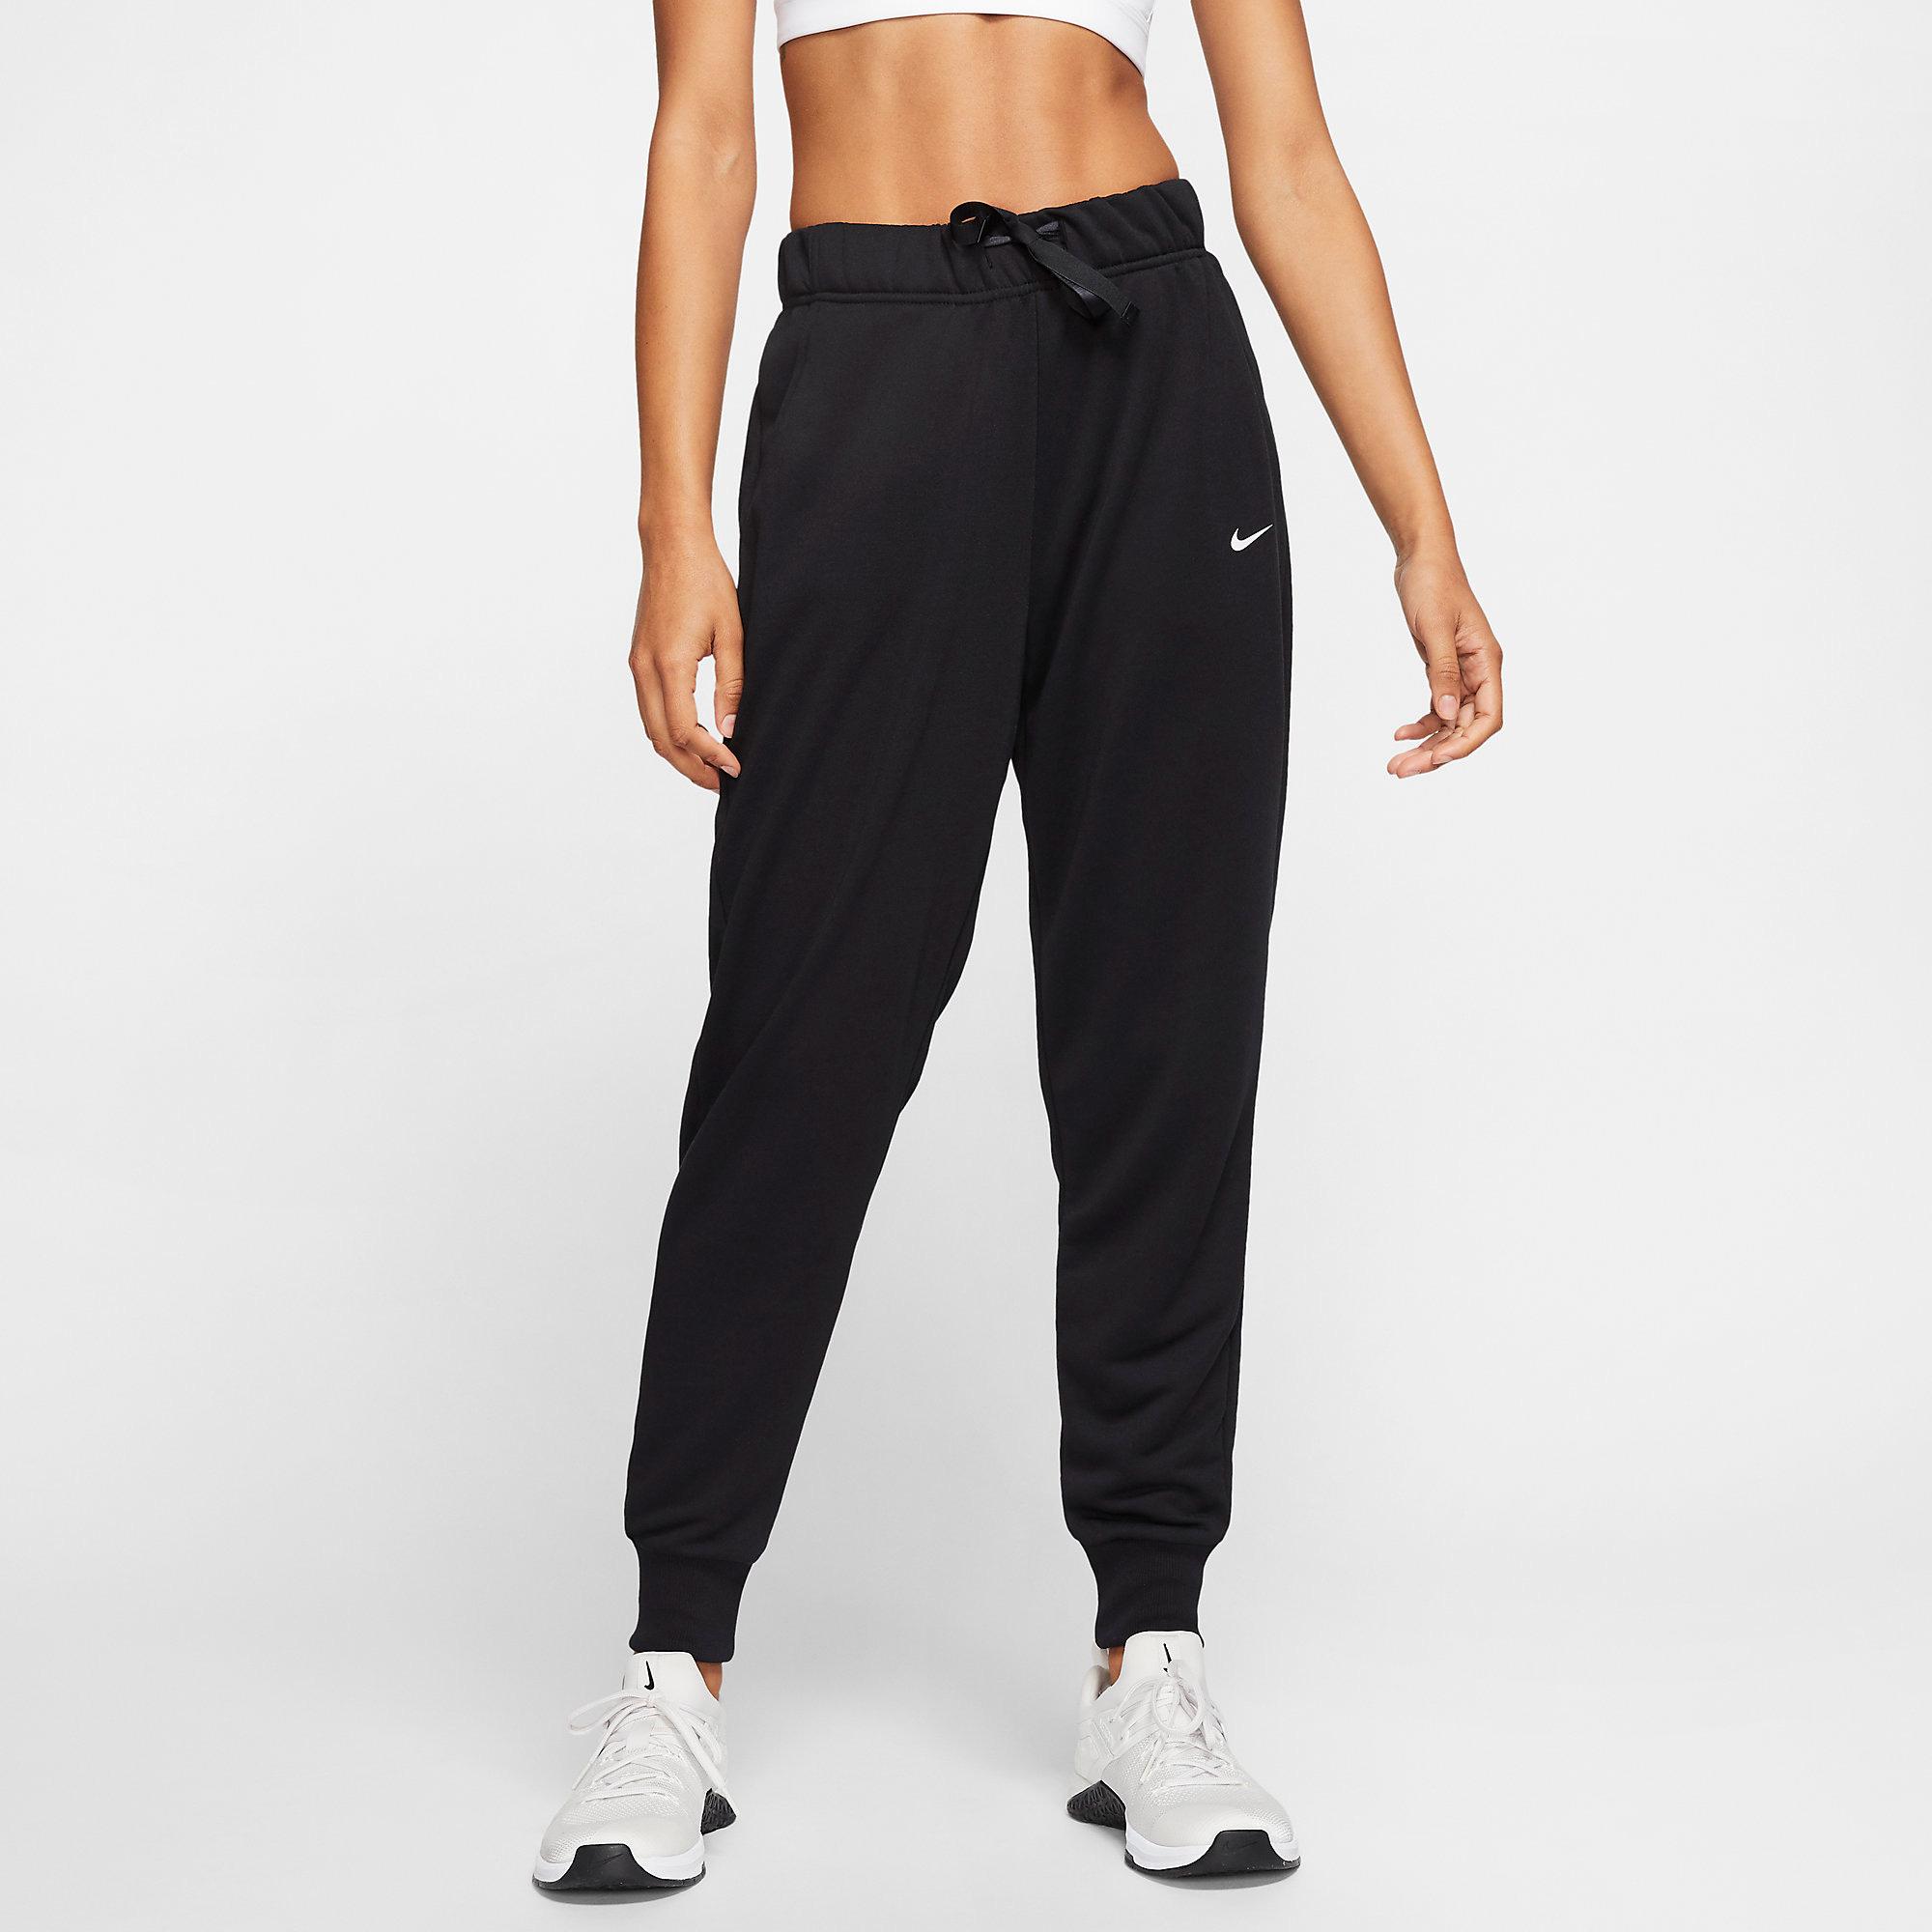 Nike Womens Dri-FIT Get Fit Trousers - Black - Tennisnuts.com